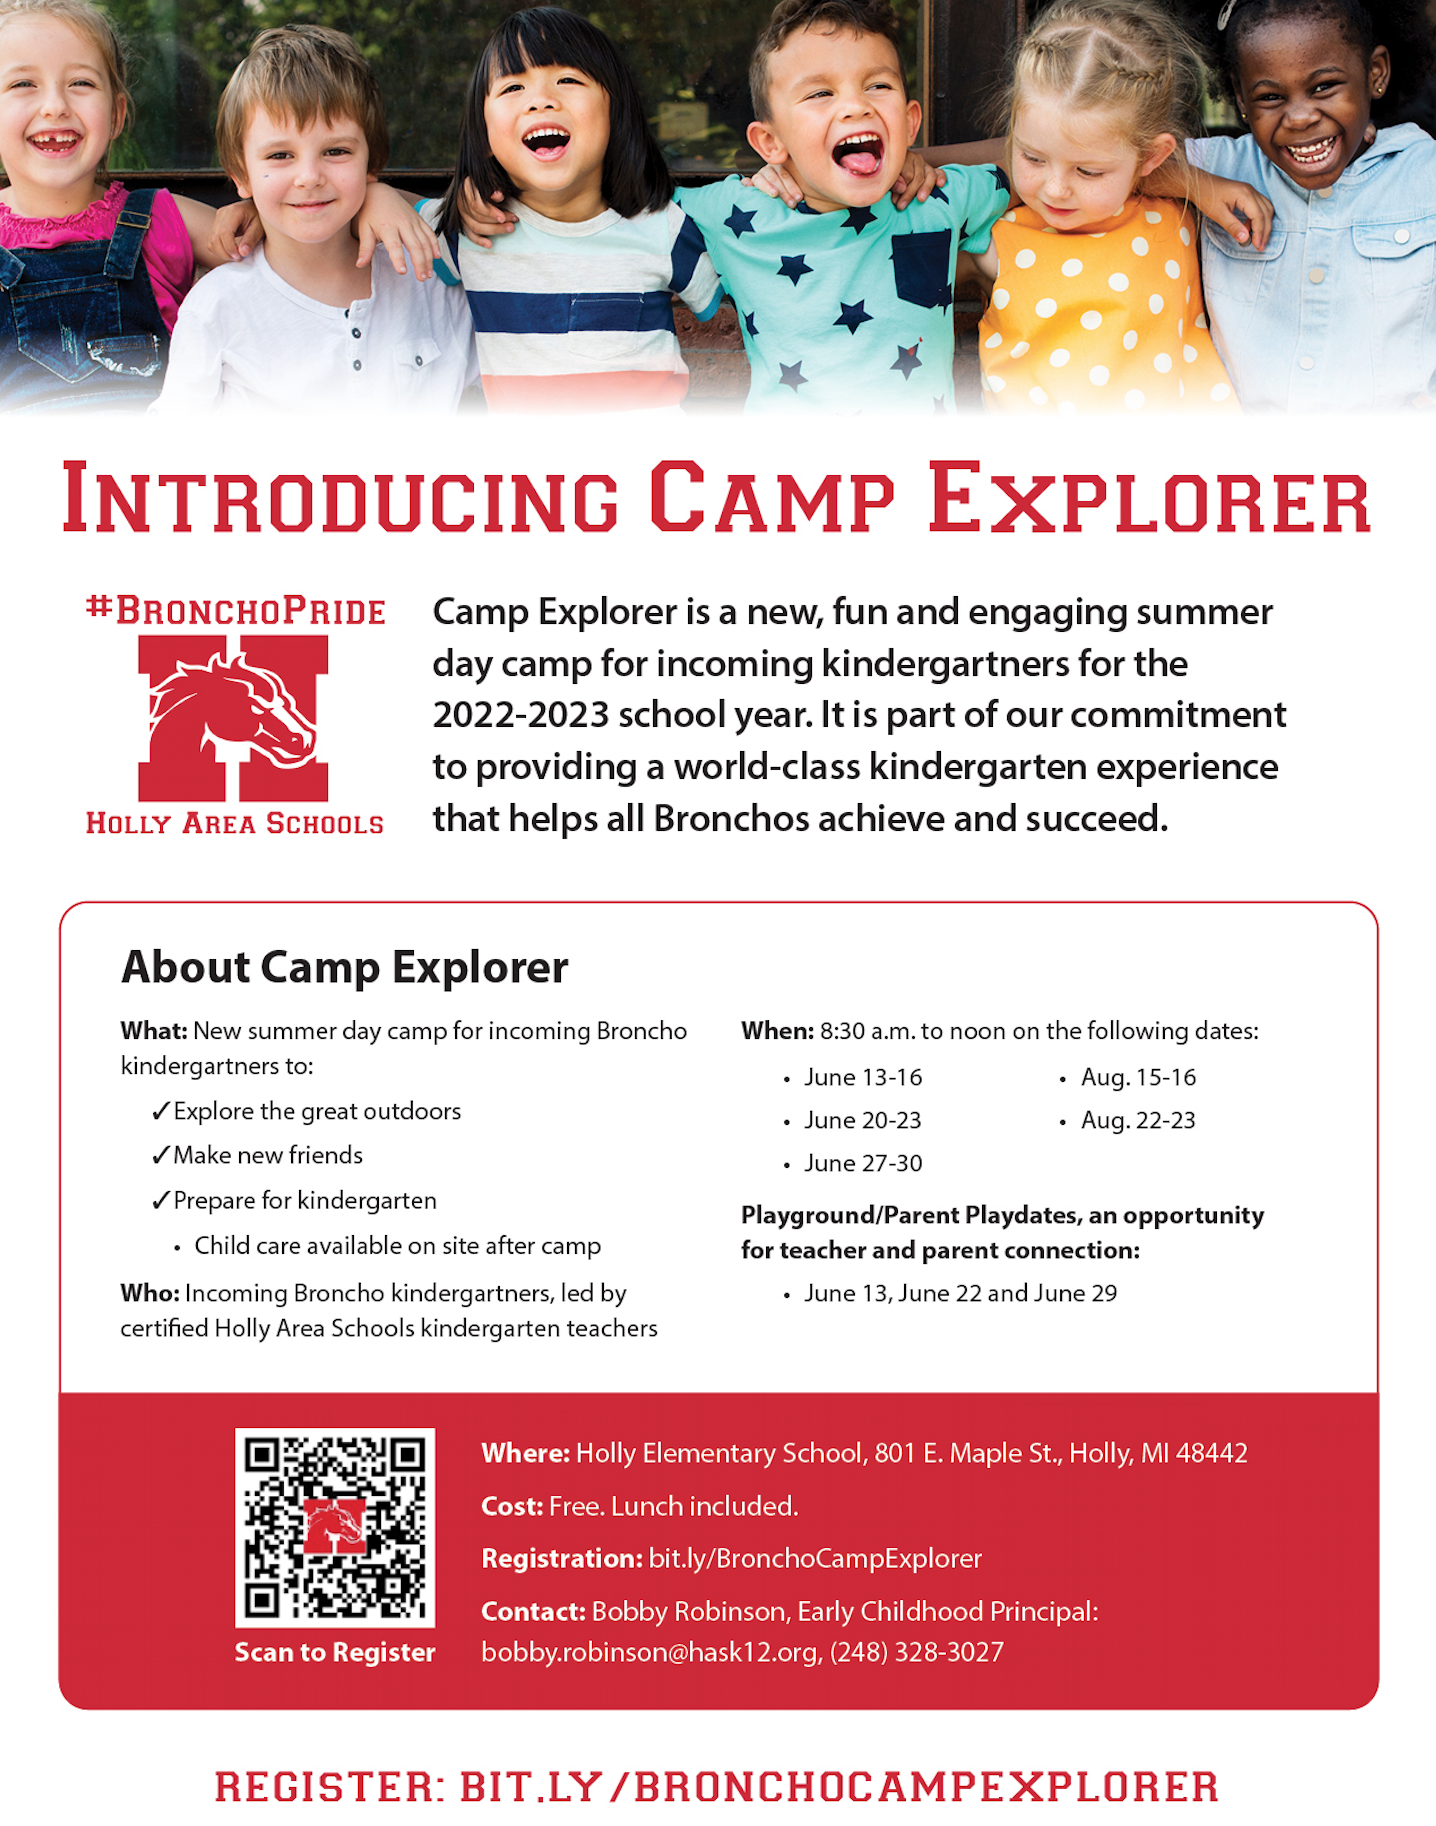 Camp Explorer Flyer Image